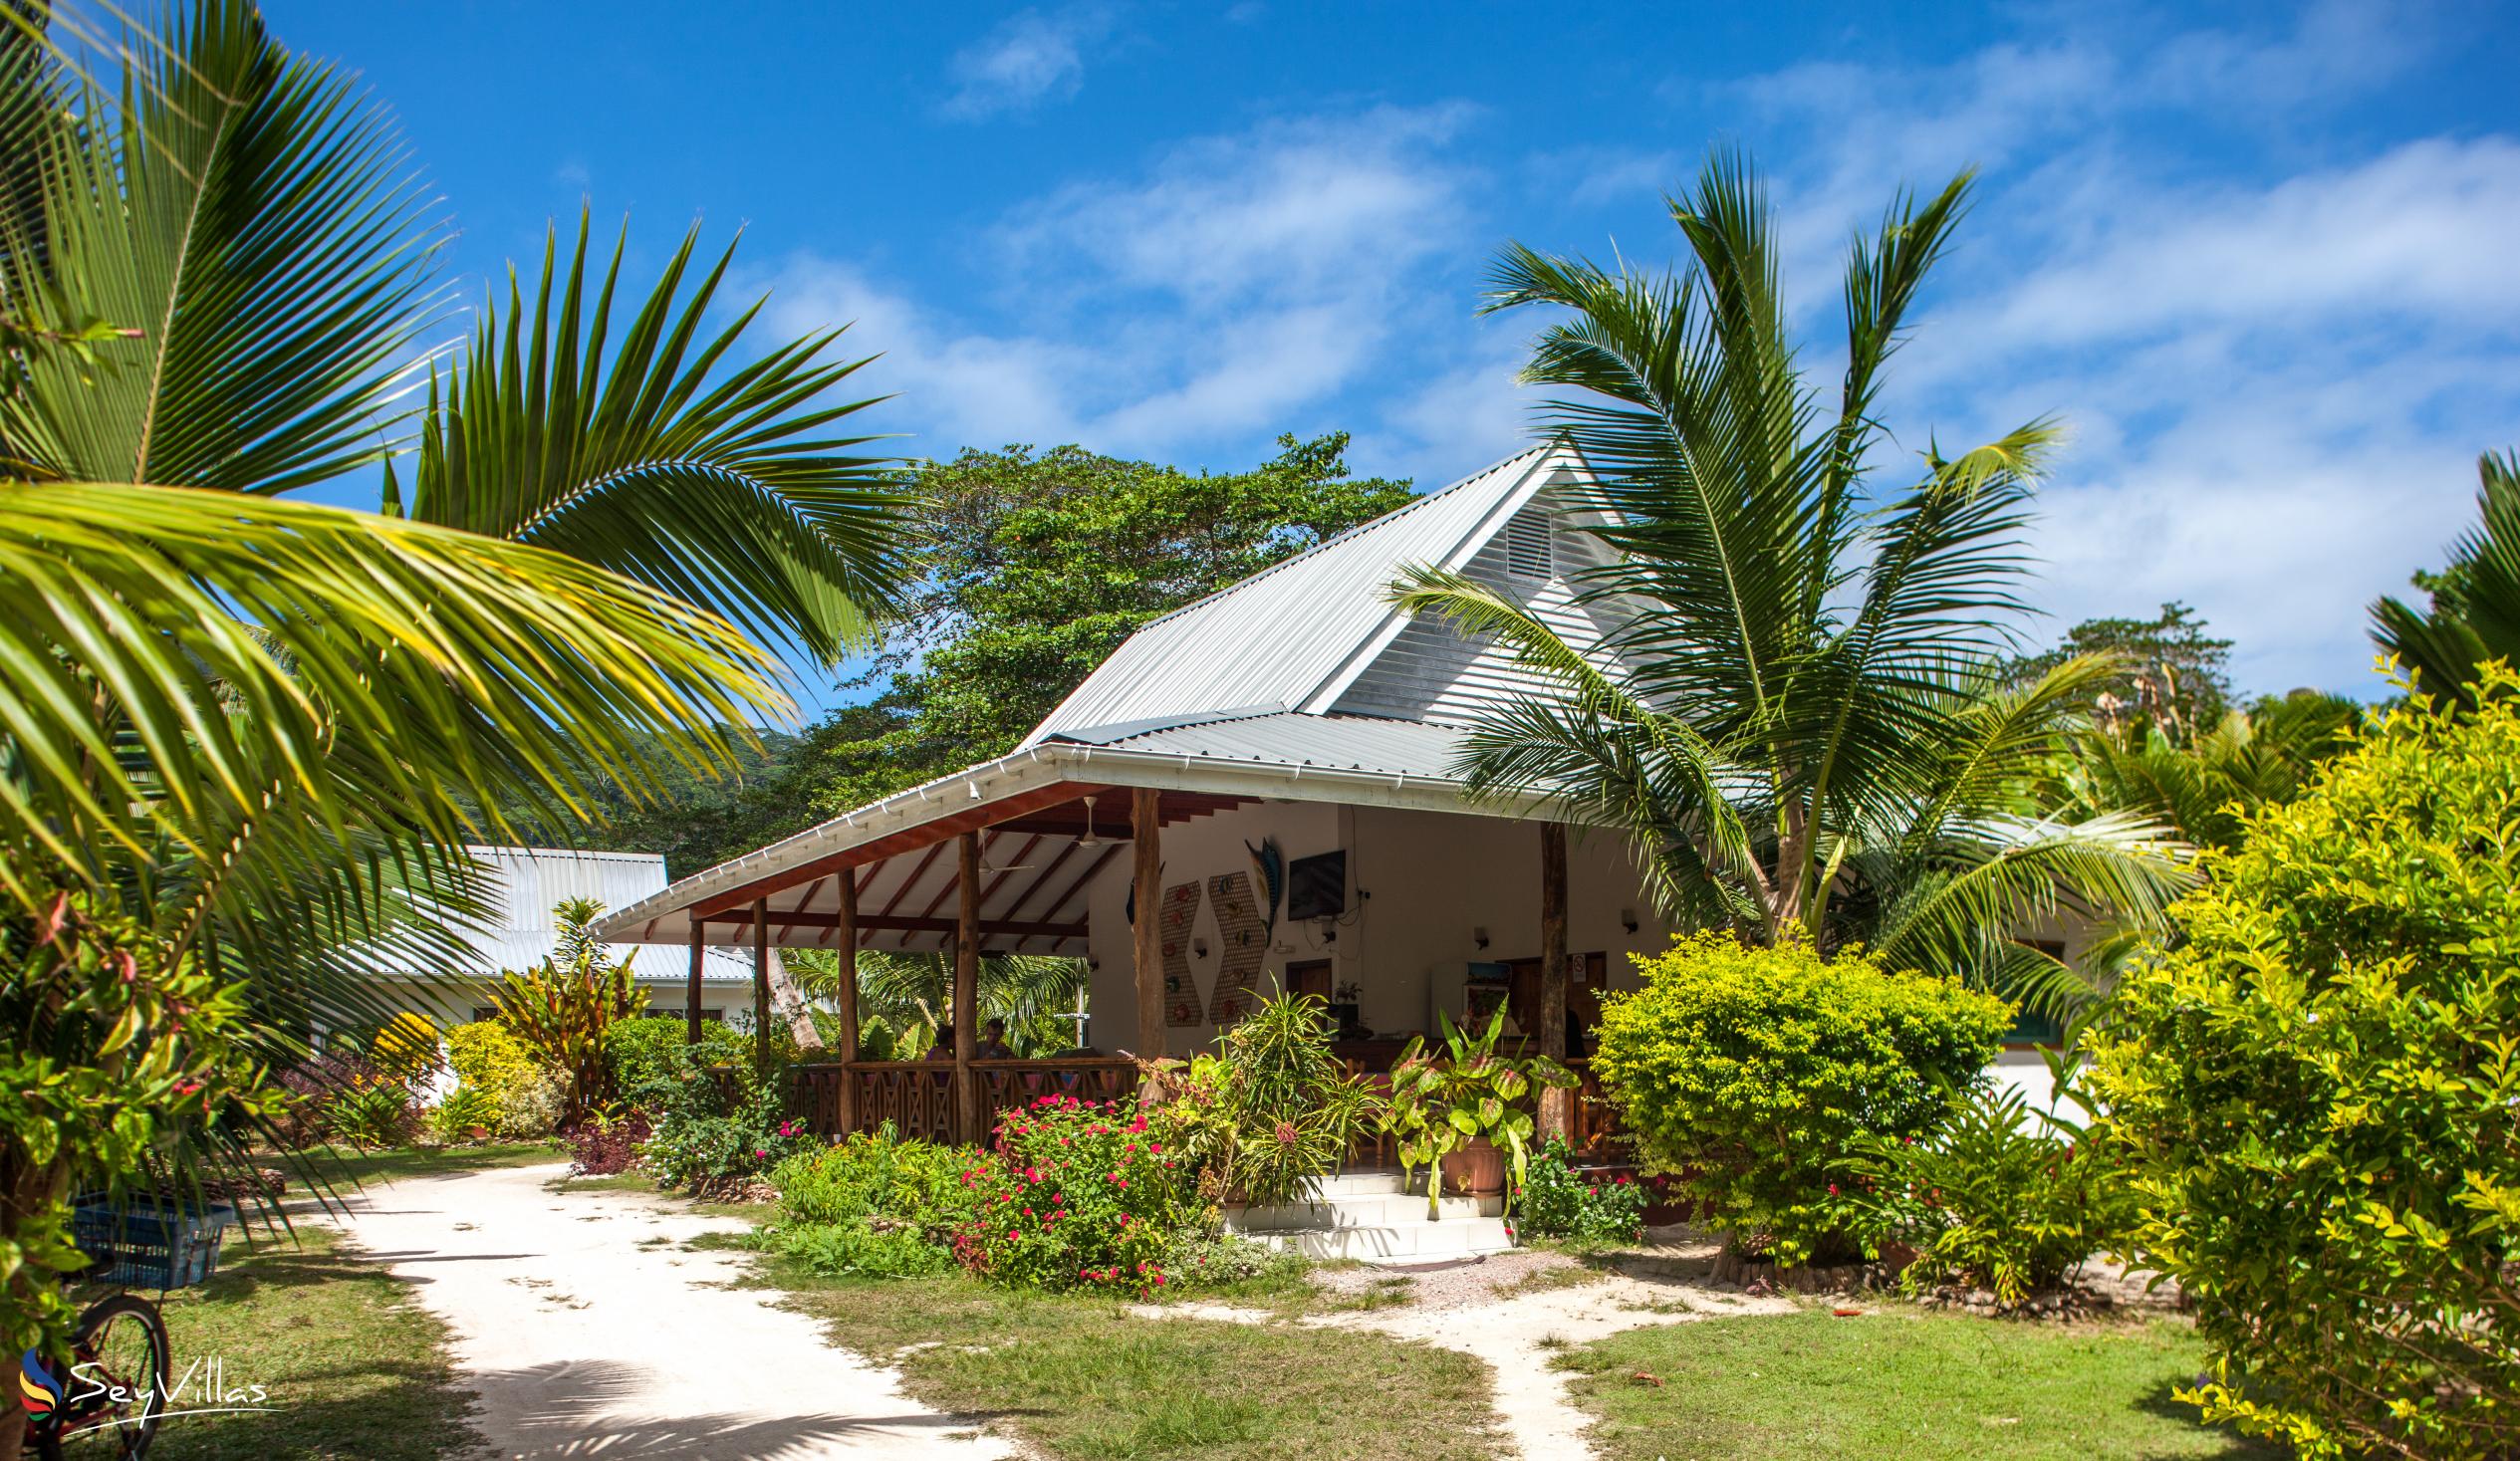 Foto 9: Villa Veuve - Extérieur - La Digue (Seychelles)